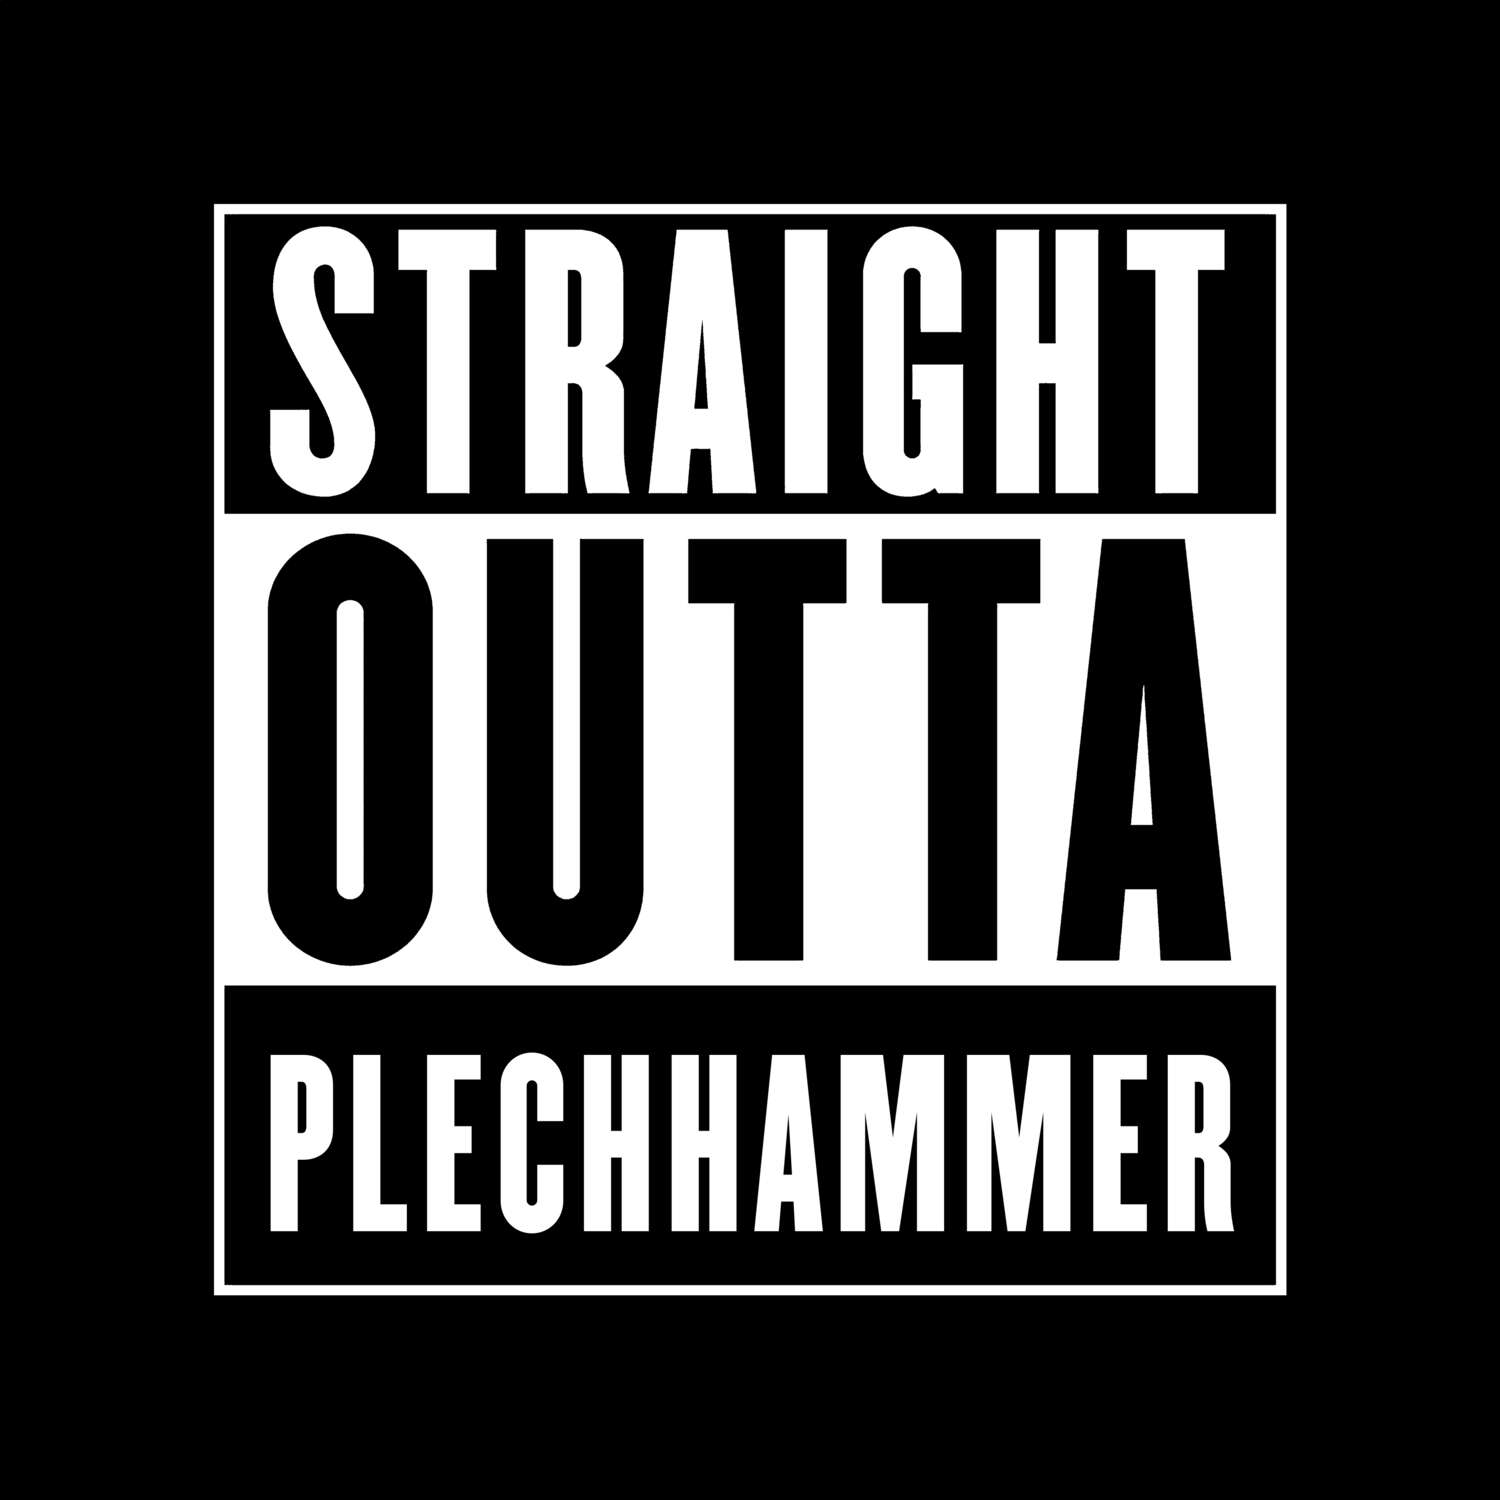 Plechhammer T-Shirt »Straight Outta«